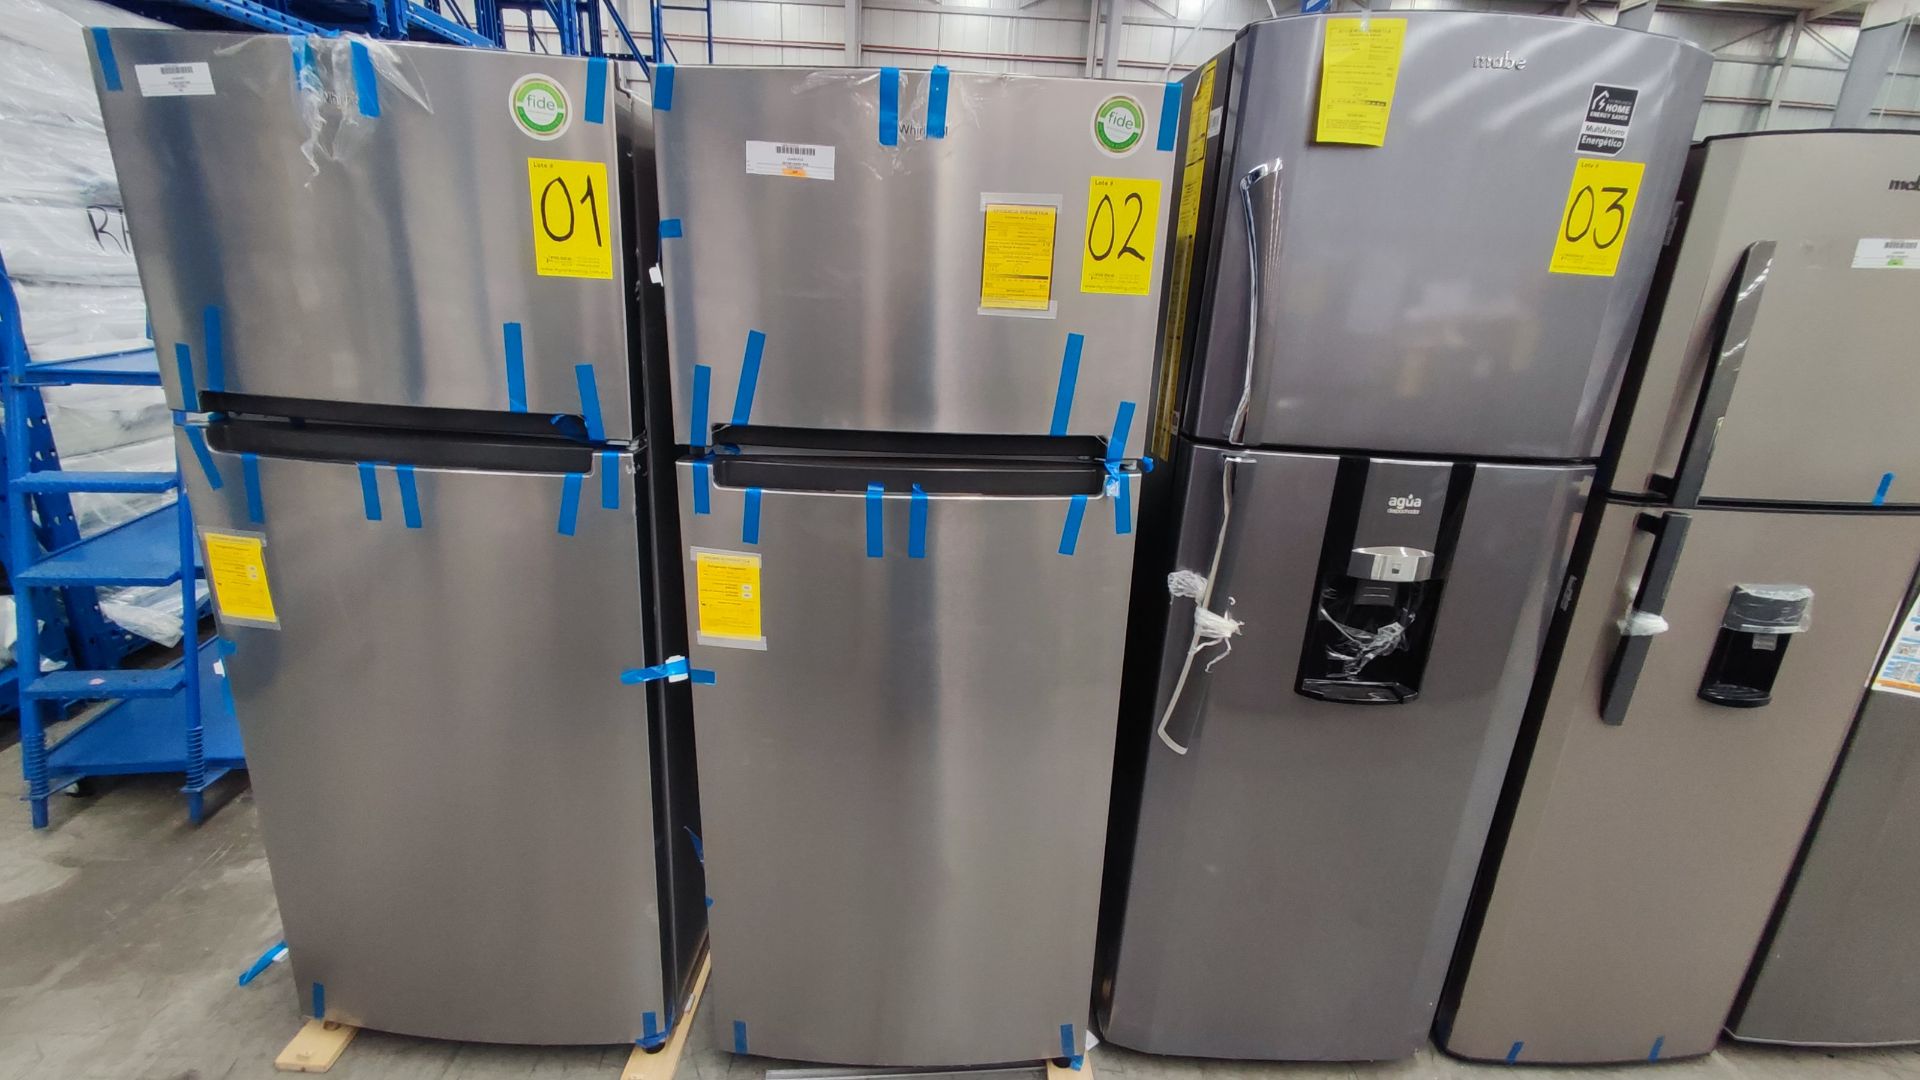 1 Refrigerador Marca Whirlpool, Modelo WT1818A01, Serie VSB1765284, Color Gris Detalles Estéticos.